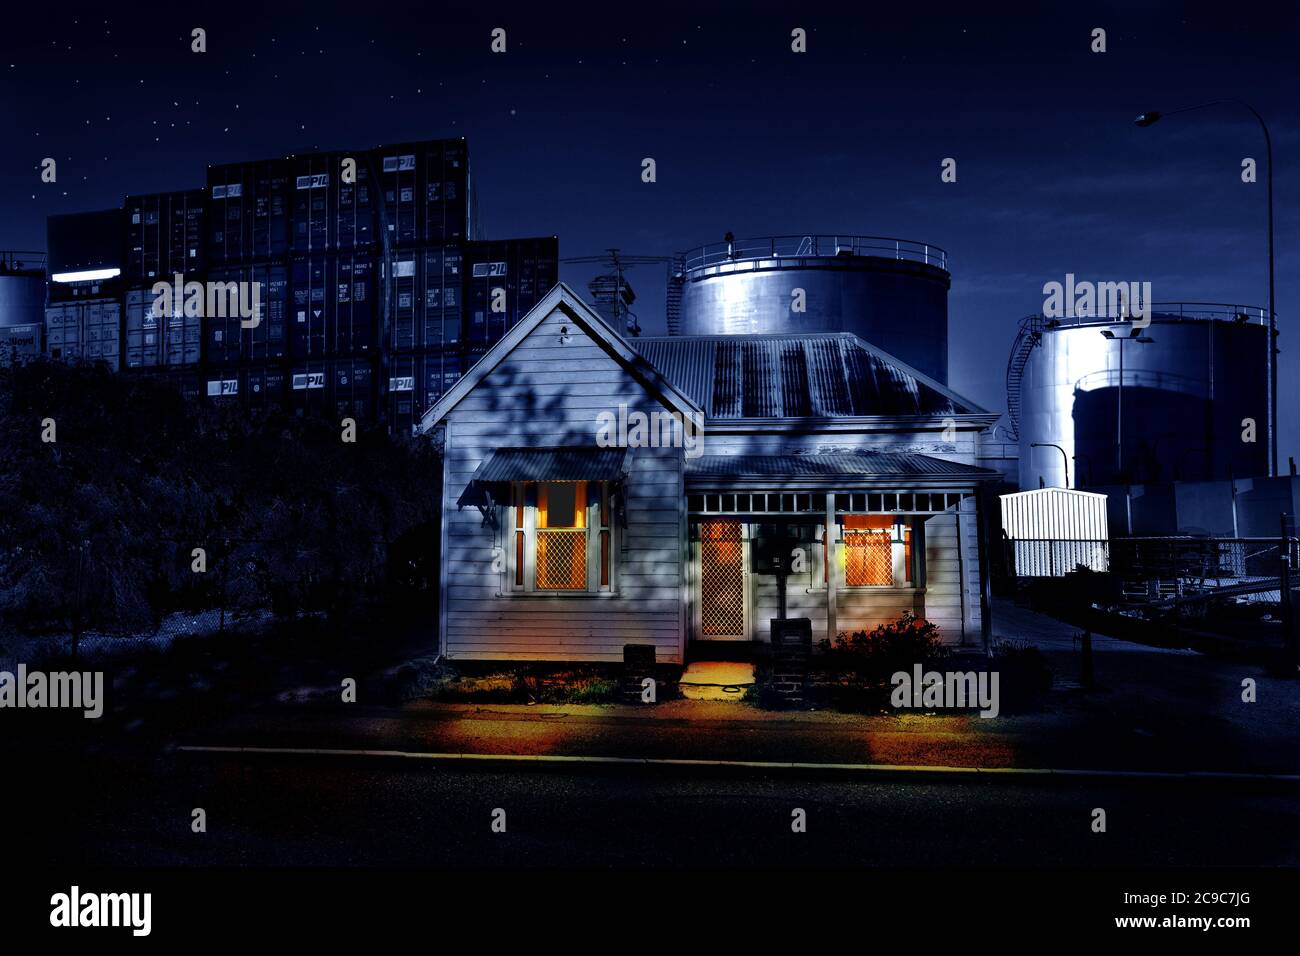 Ein Holzhaus aus dem frühen 20. Jahrhundert, umgeben von einem kommerziellen Containerhafen und großen Öltanks. Nachts aufgenommen, mit Sternen und Fensterbeleuchtung. Stockfoto